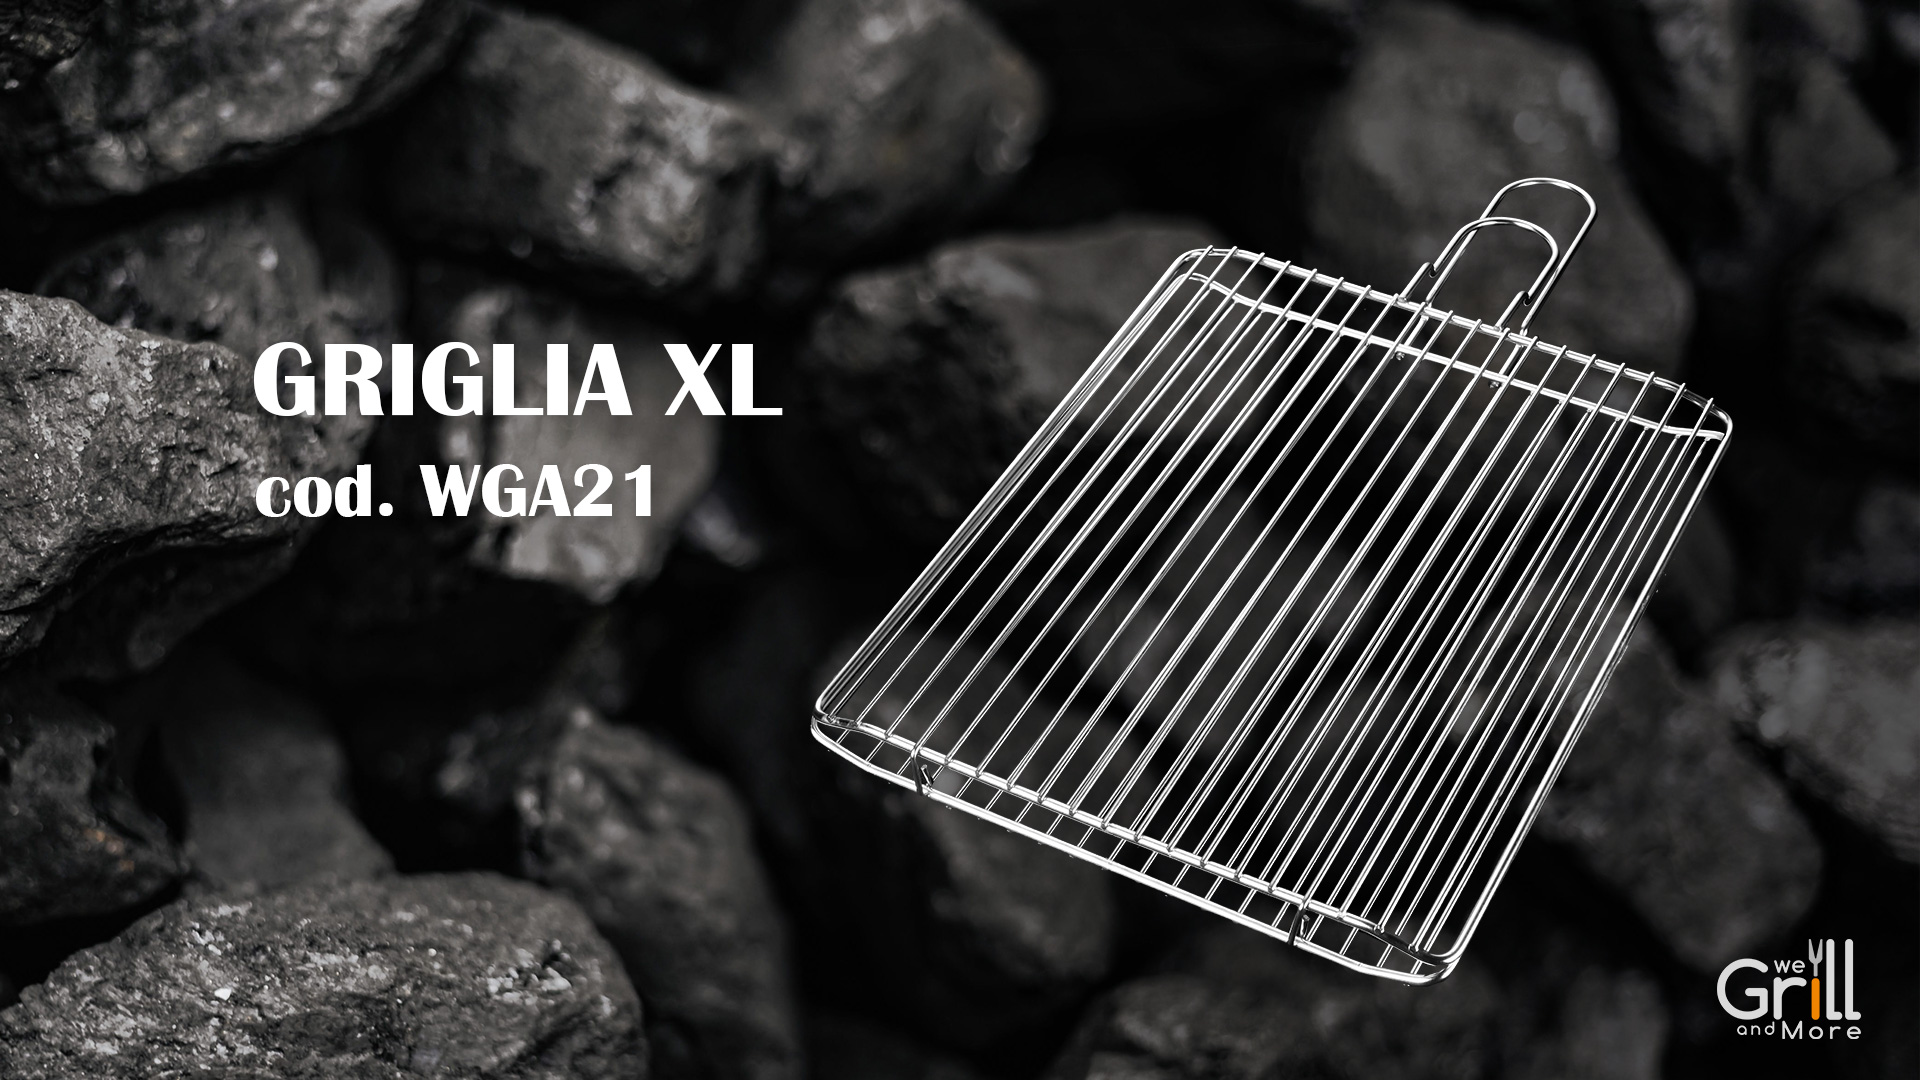 Wegrill-accessori-2021-griglia-xl